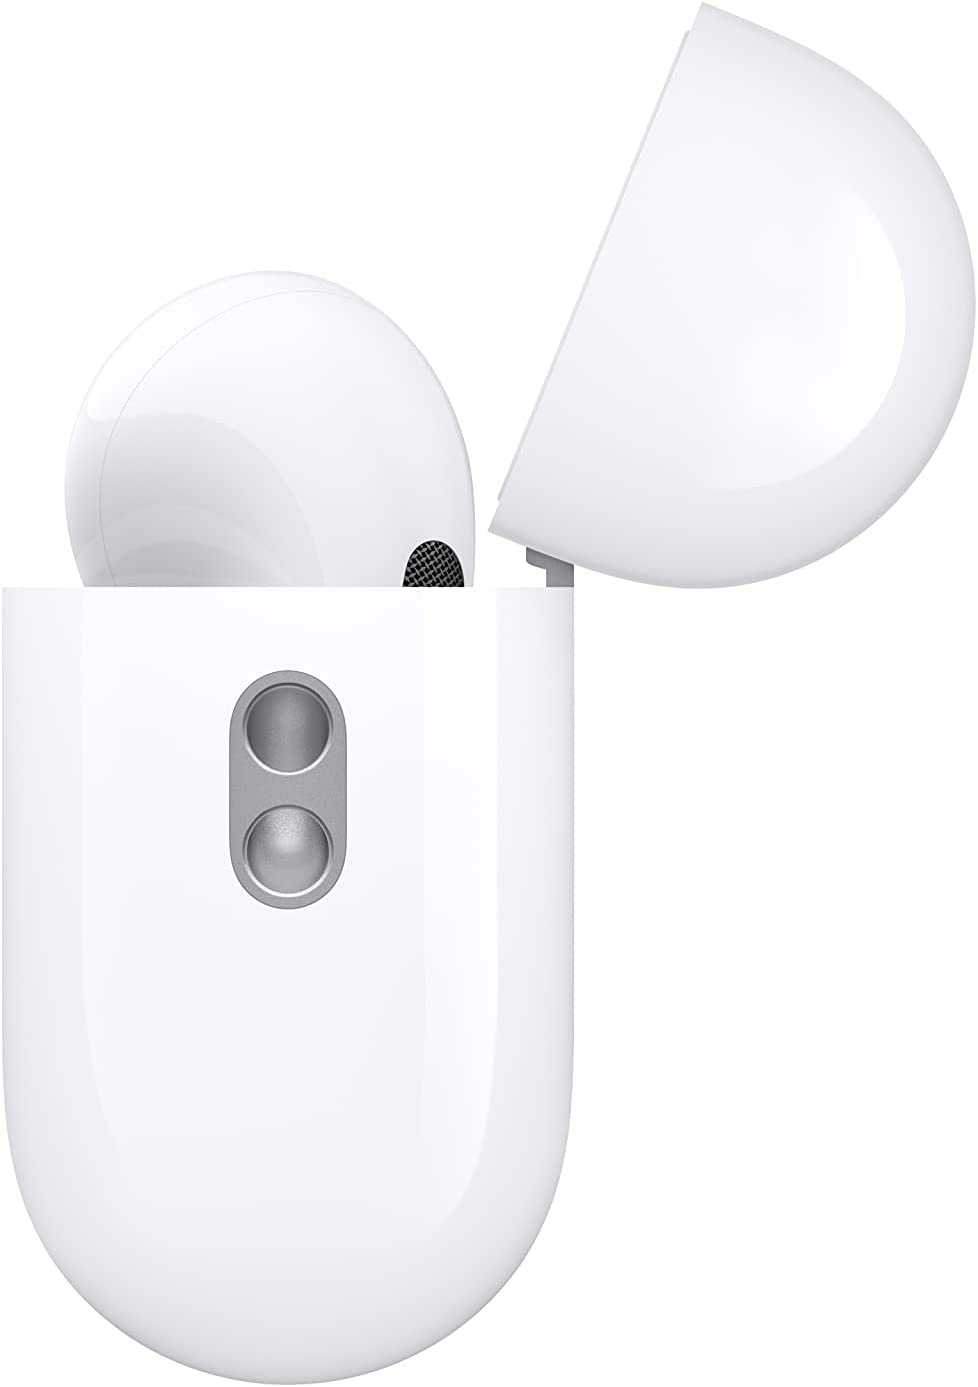 atongm Air 10 Pro ANC Aktiv Səs Ləğvetmə Simsiz Bluetooth Qulaqlıq - Simsiz Doldurma iOS və Android Cihazları ilə uyğun gəlir 